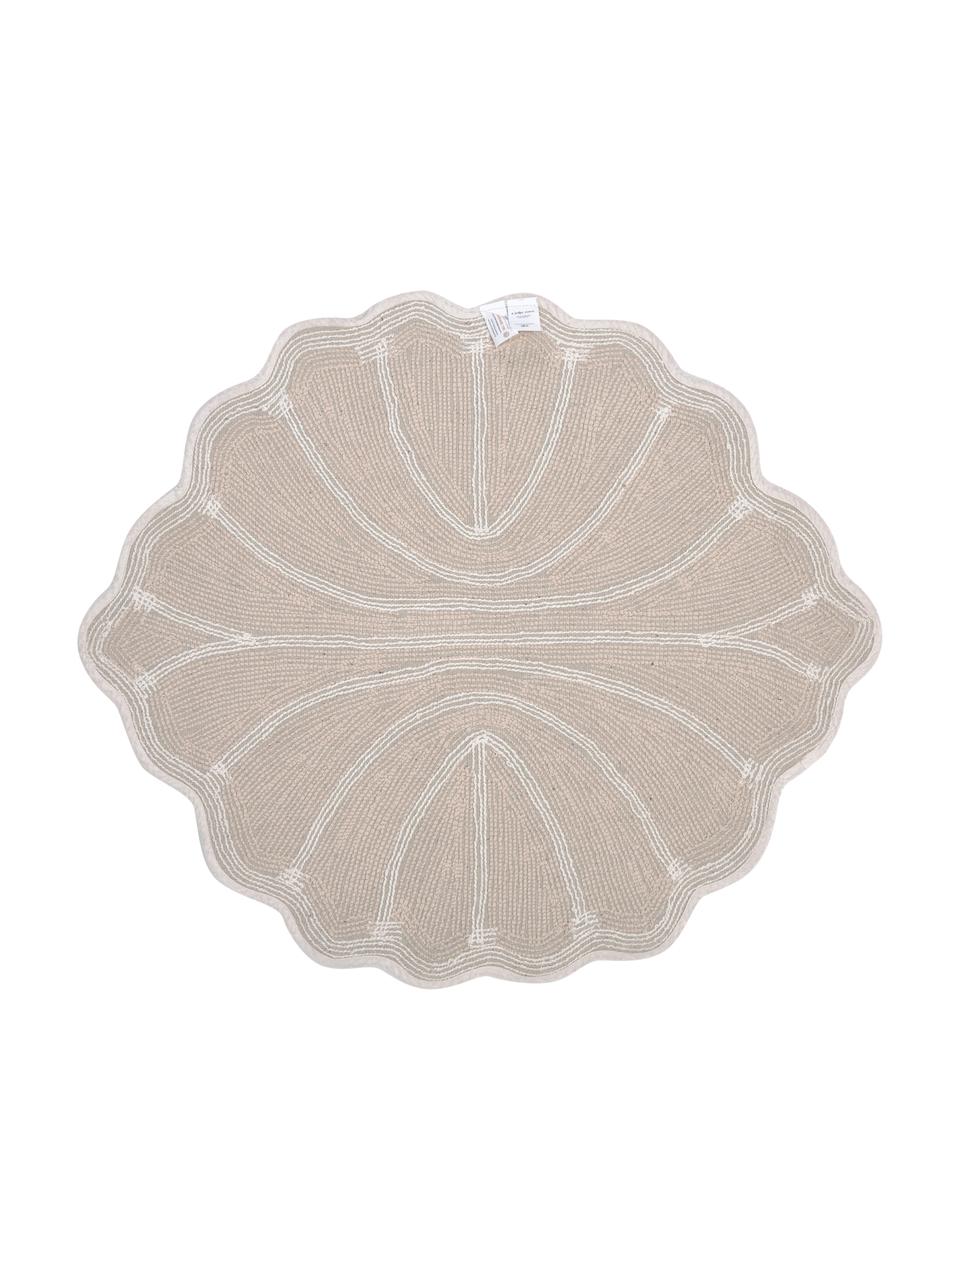 Dywanik łazienkowy z bawełny organicznej Soft, 100% bawełna z certyfikatem BCI, Ecru, biały, S 70 x D 80 cm